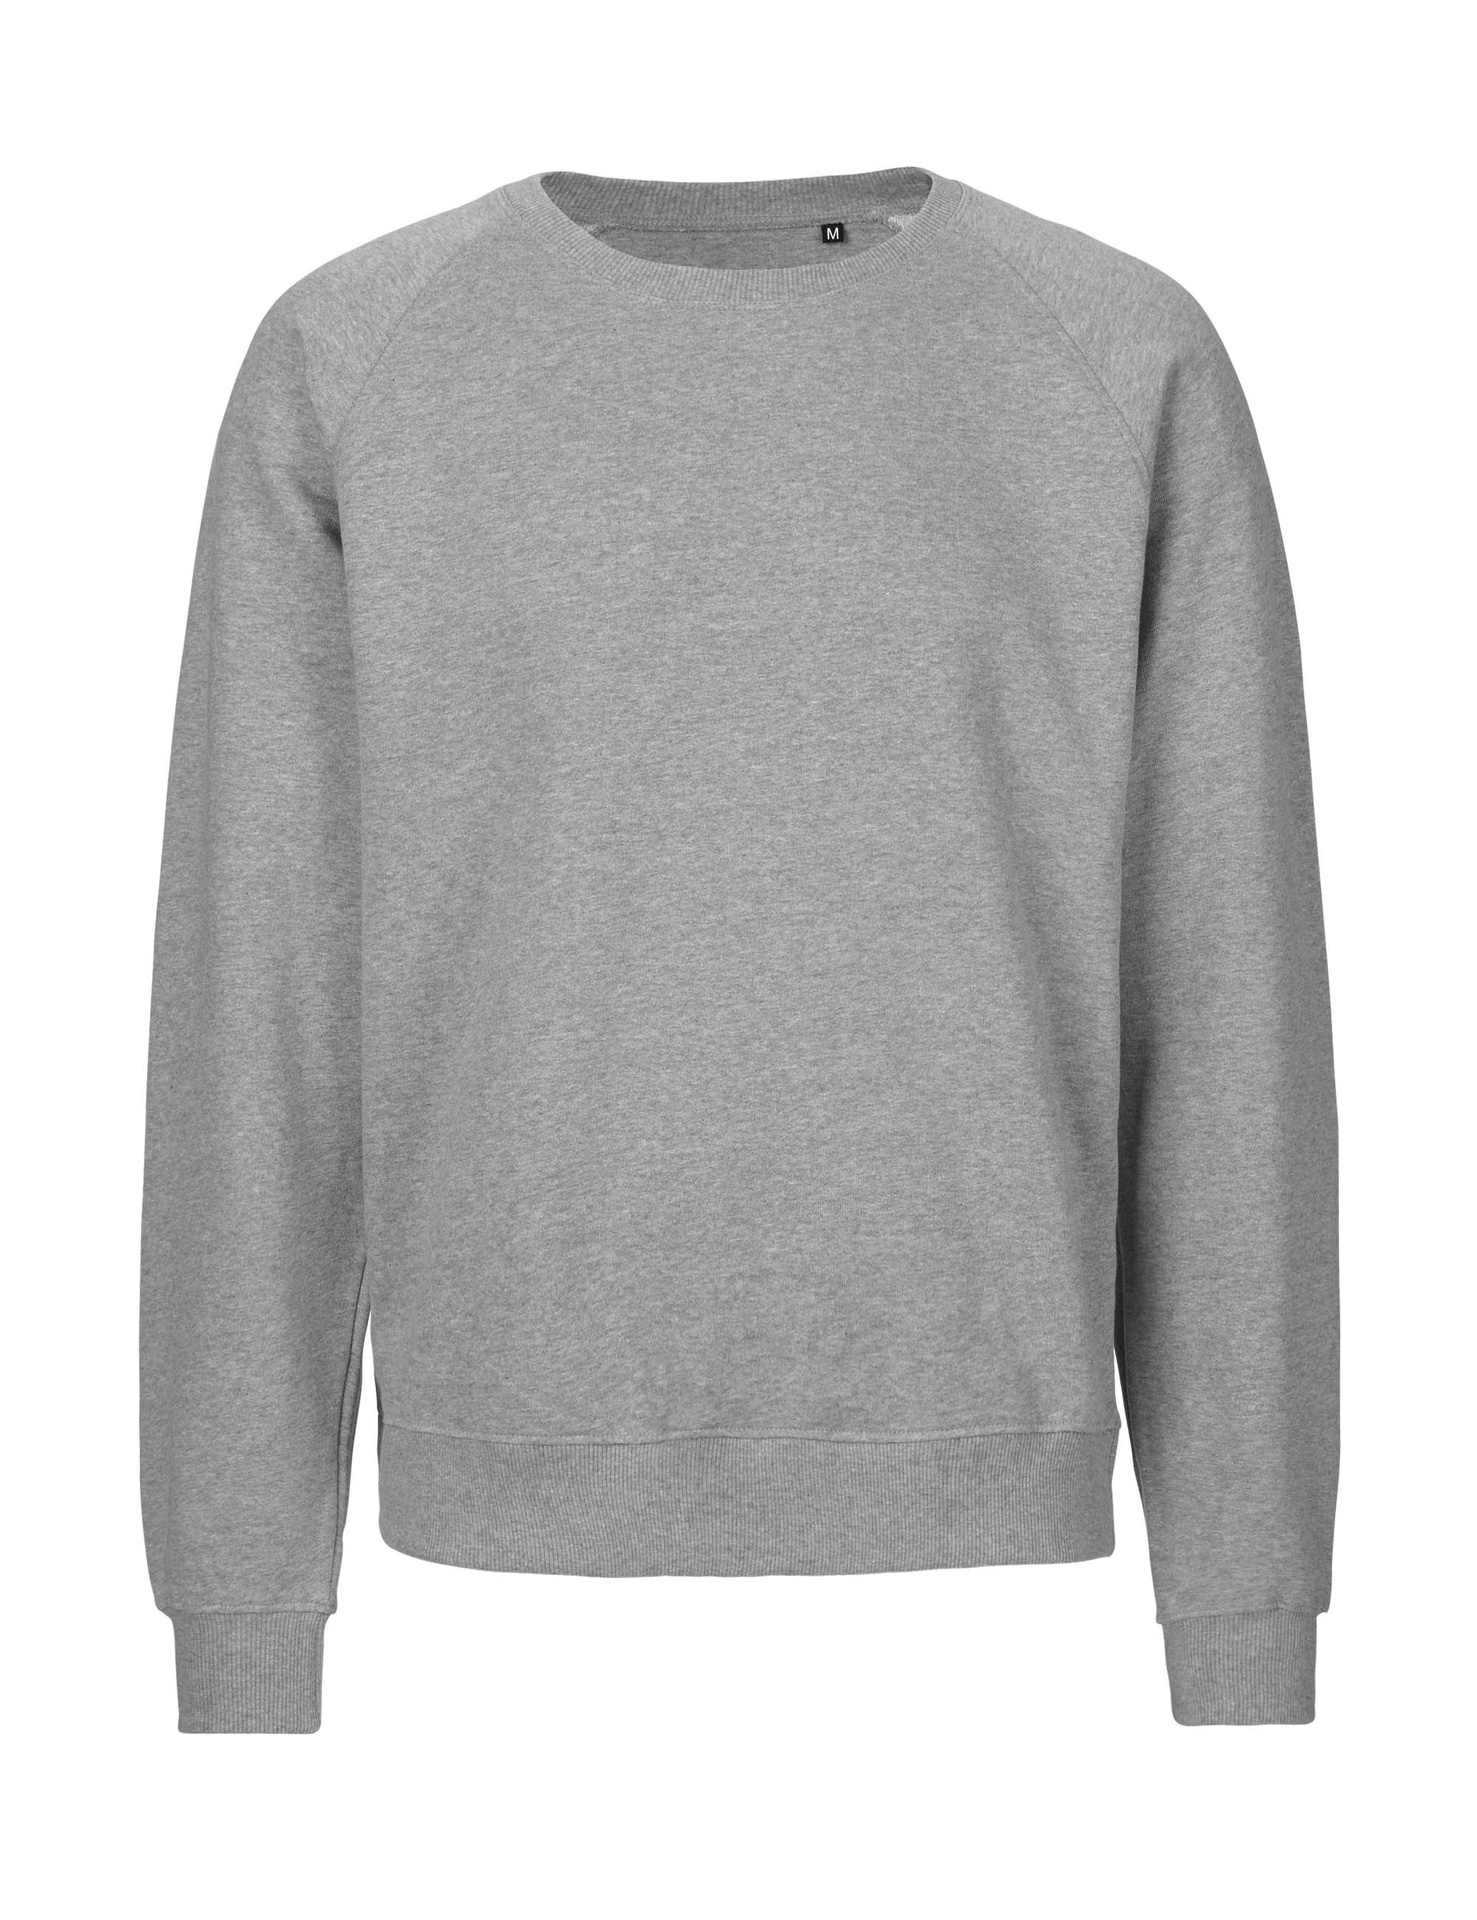 [PR/06028] Unisex Tiger Cotton Sweatshirt (Sport Grey 21, M)